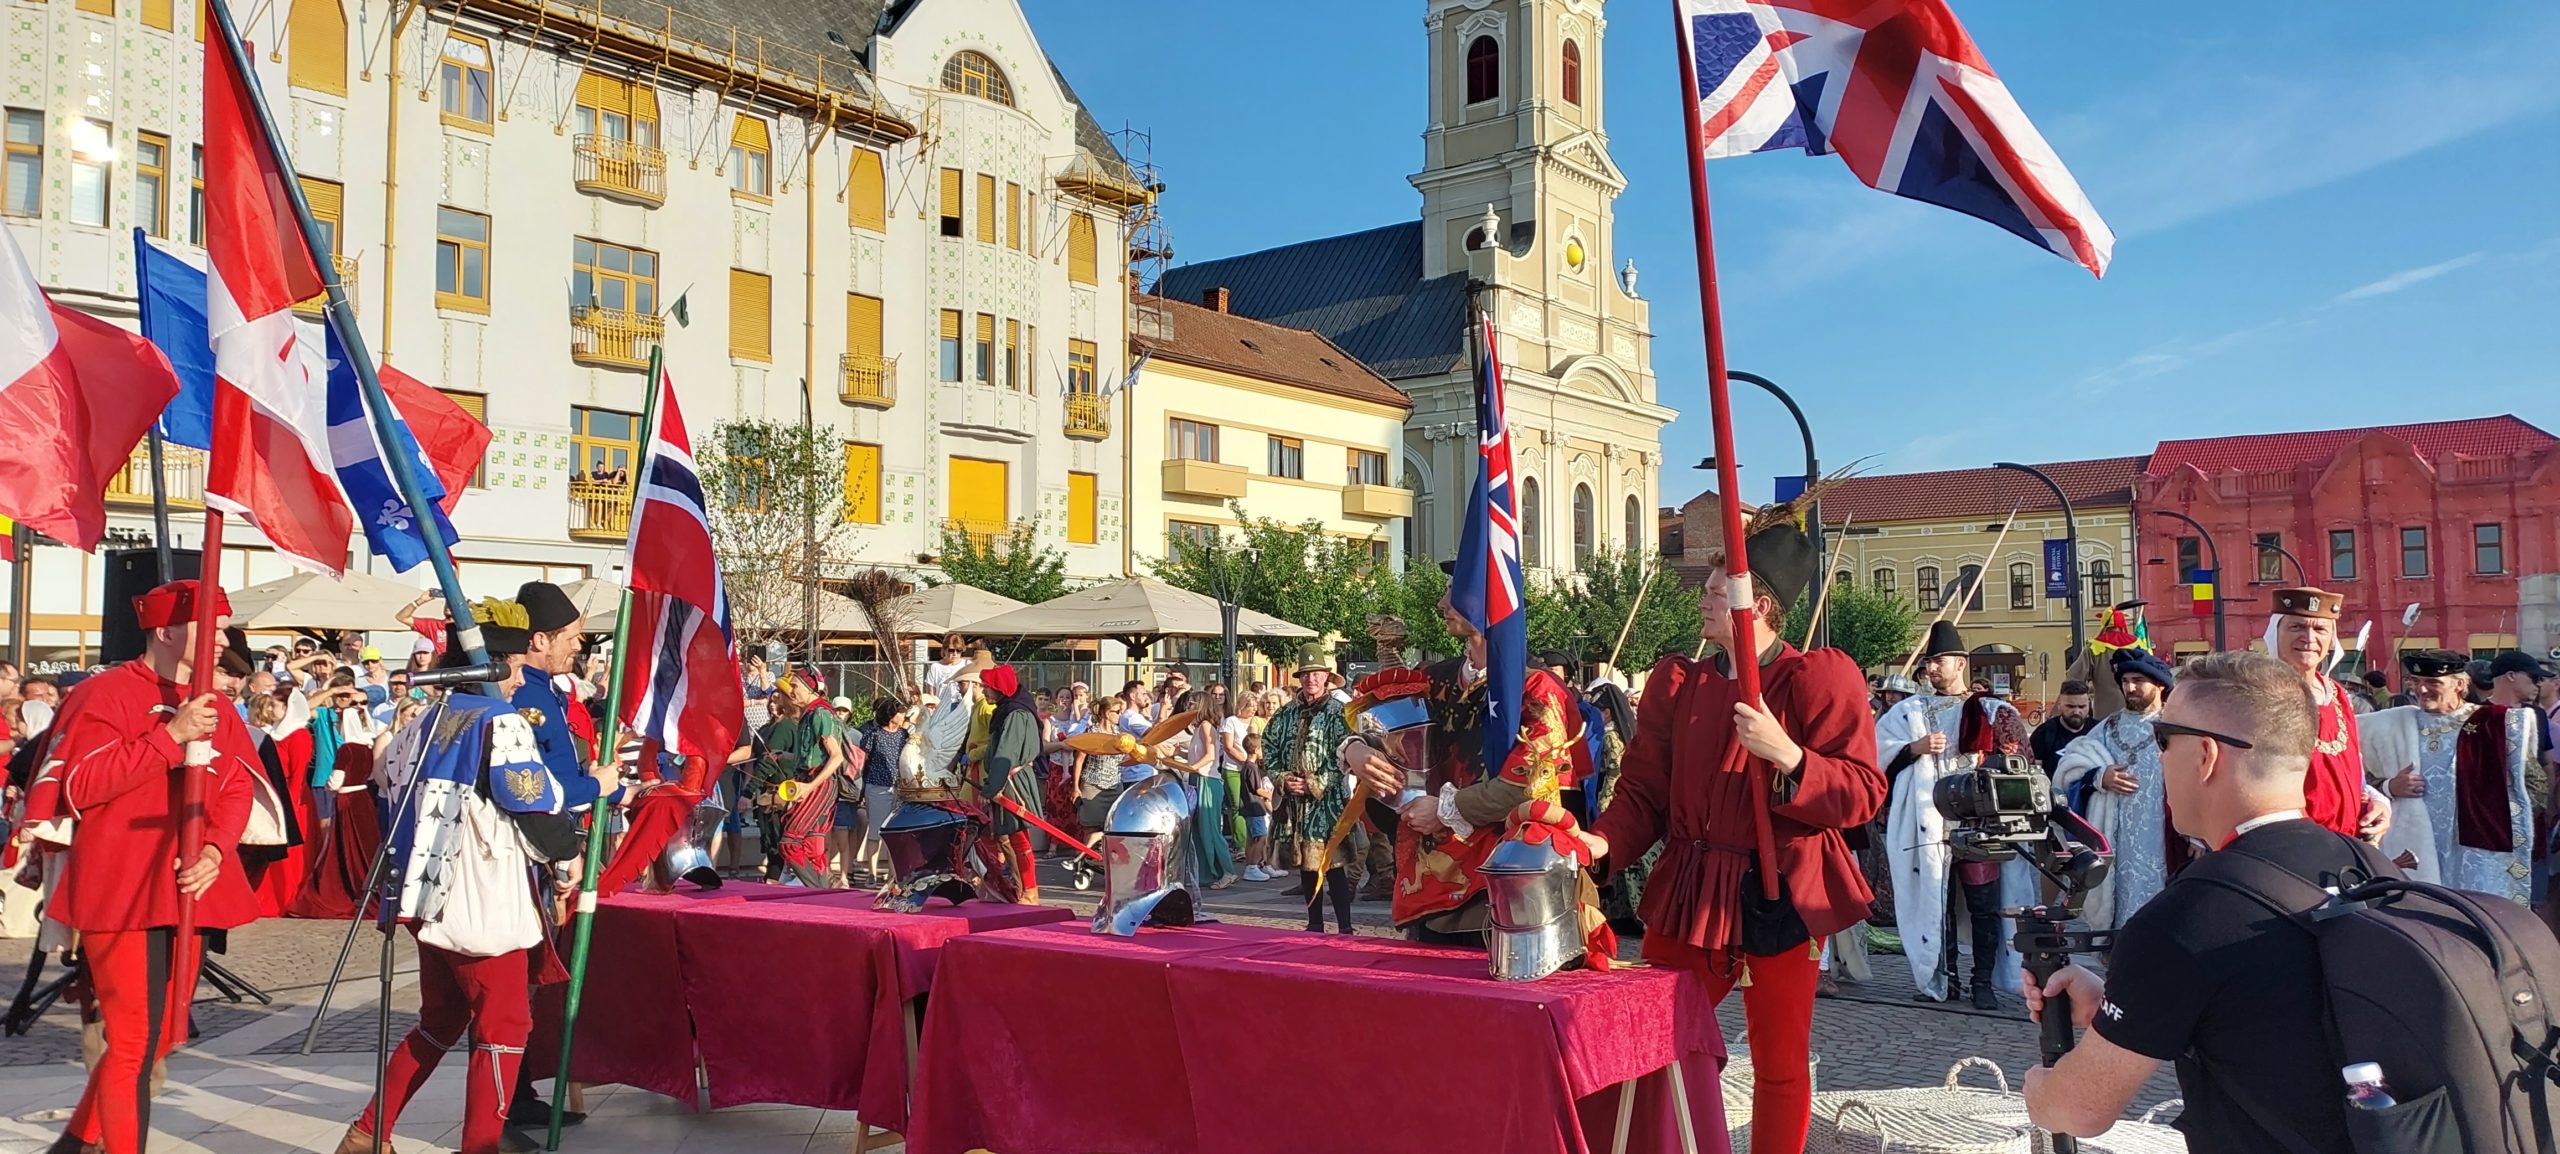 festivalul medieval oradea (7)